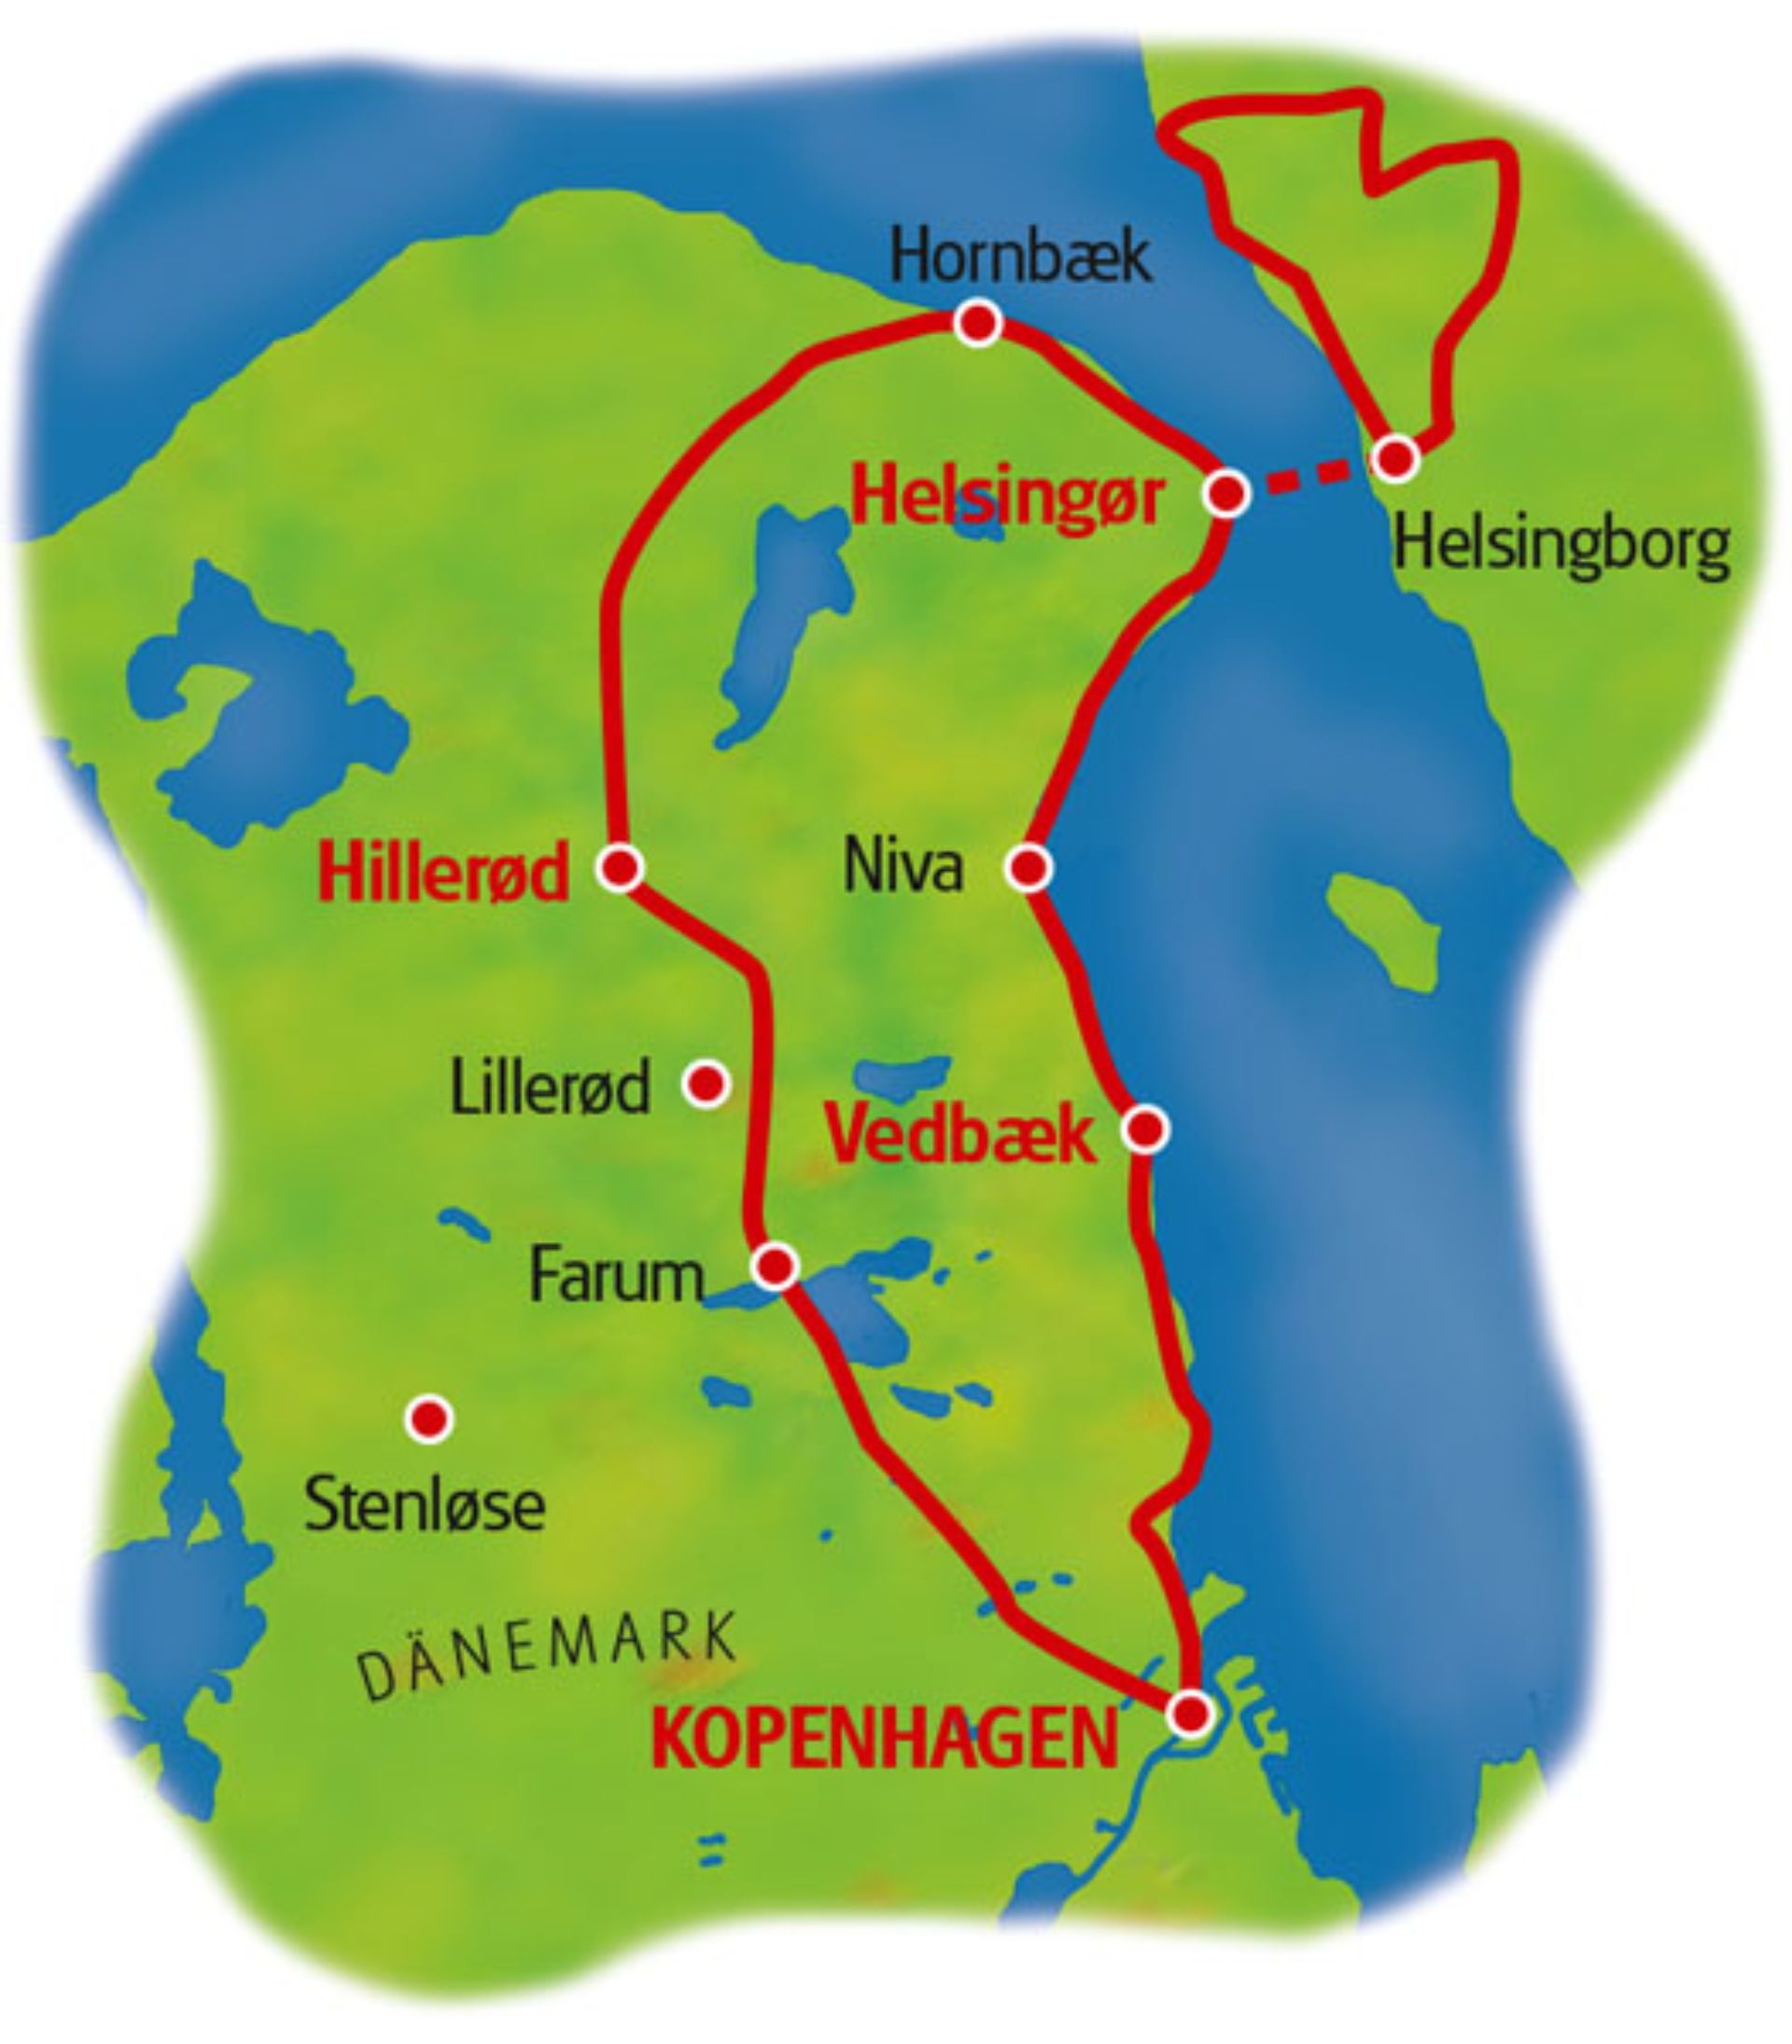 copenhagen bike tour route